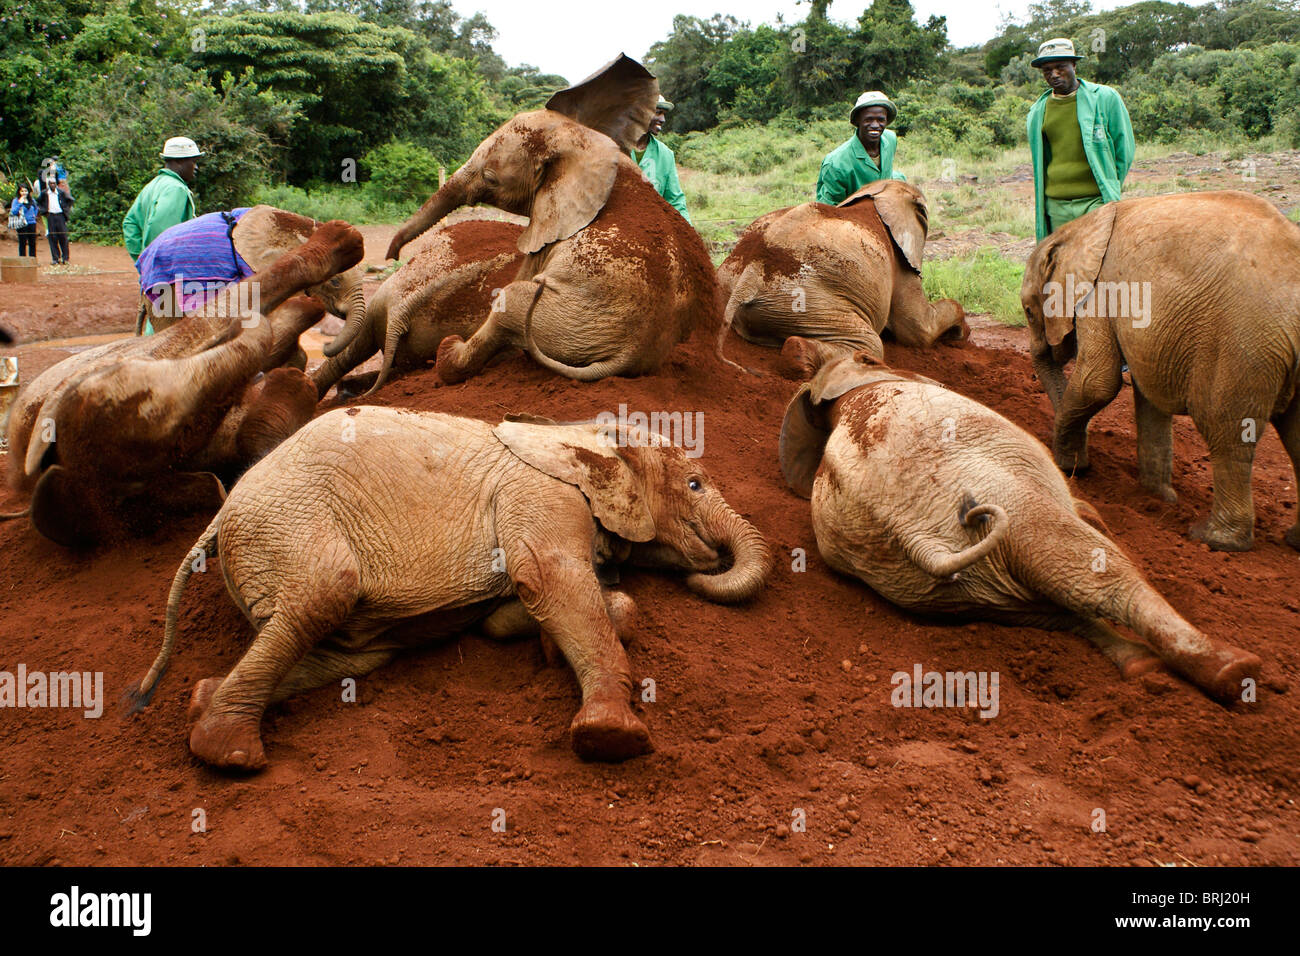 Los elefantes huérfanos y sus cuidadores, Sheldrick Wildlife Trust, Nairobi, Kenia Foto de stock